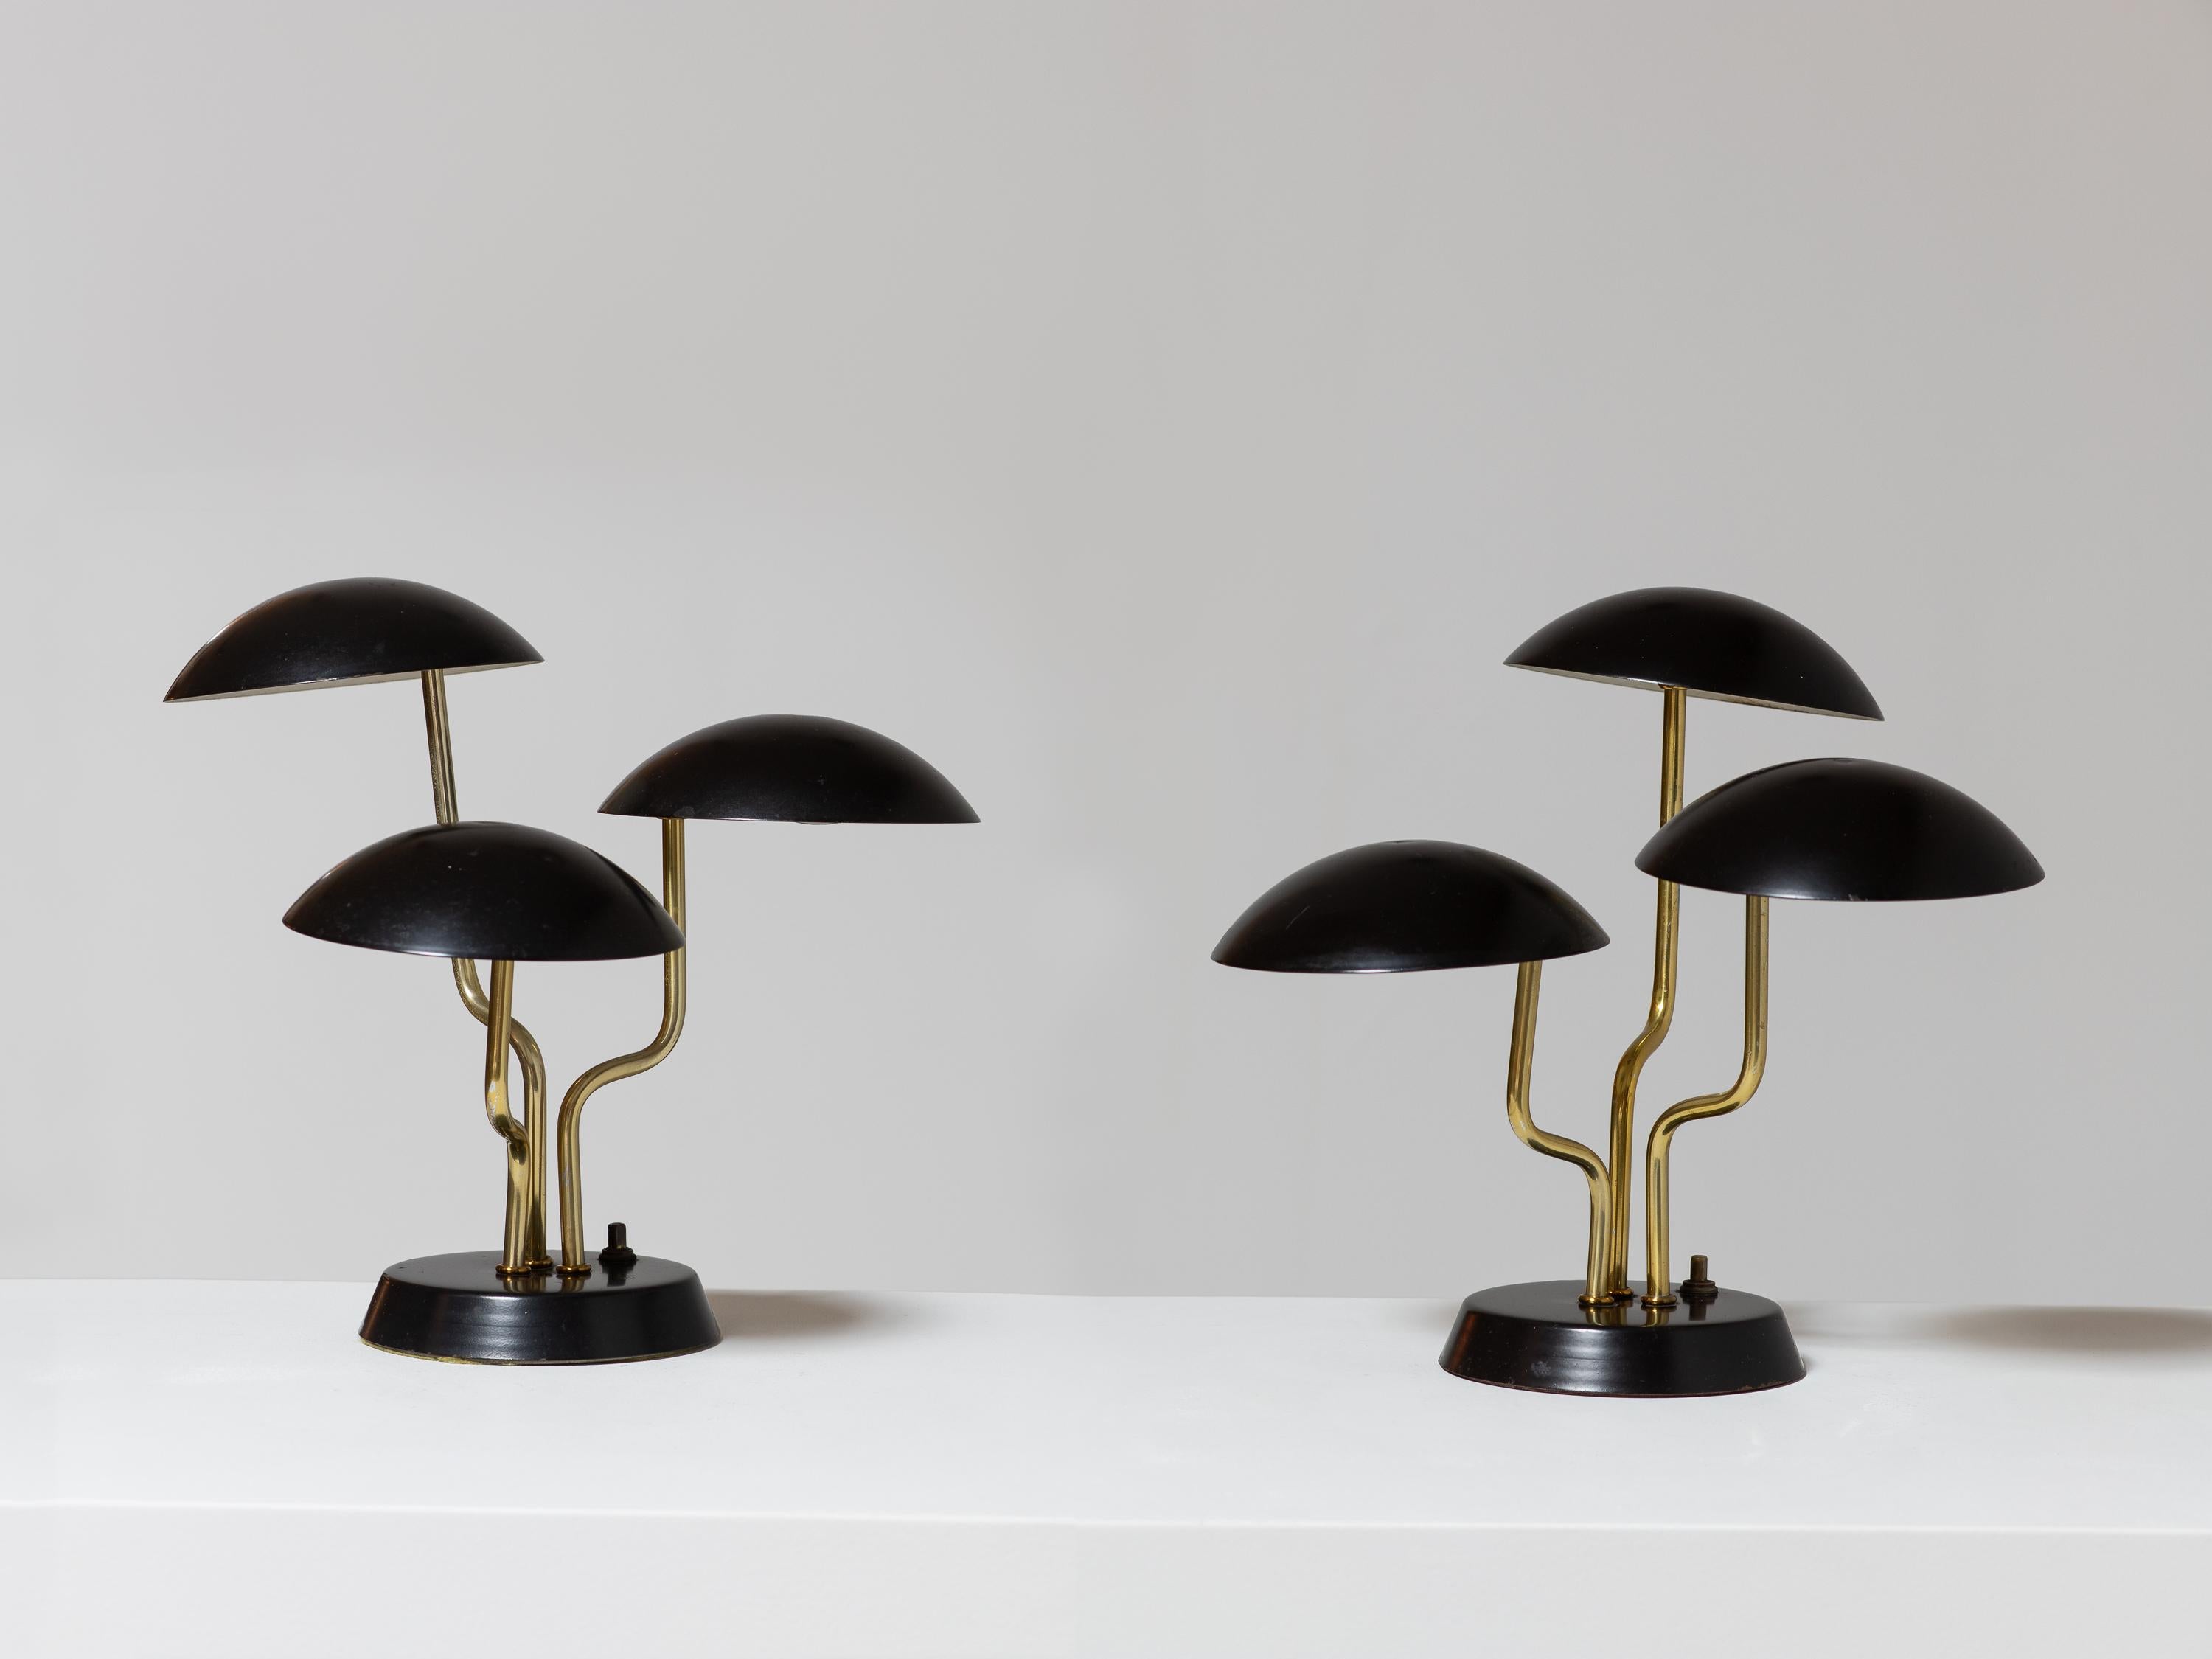 Ein seltenes Paar zierlicher Pilz-Tischlampen, entworfen von Gino Sarfatti. Drei gewölbte Schirme schweben auf gebogenen Messingstäben.  In wunderschönem Zustand, mit minimalen Kratzern auf der Originalfarbe der Schirme und Patina auf dem